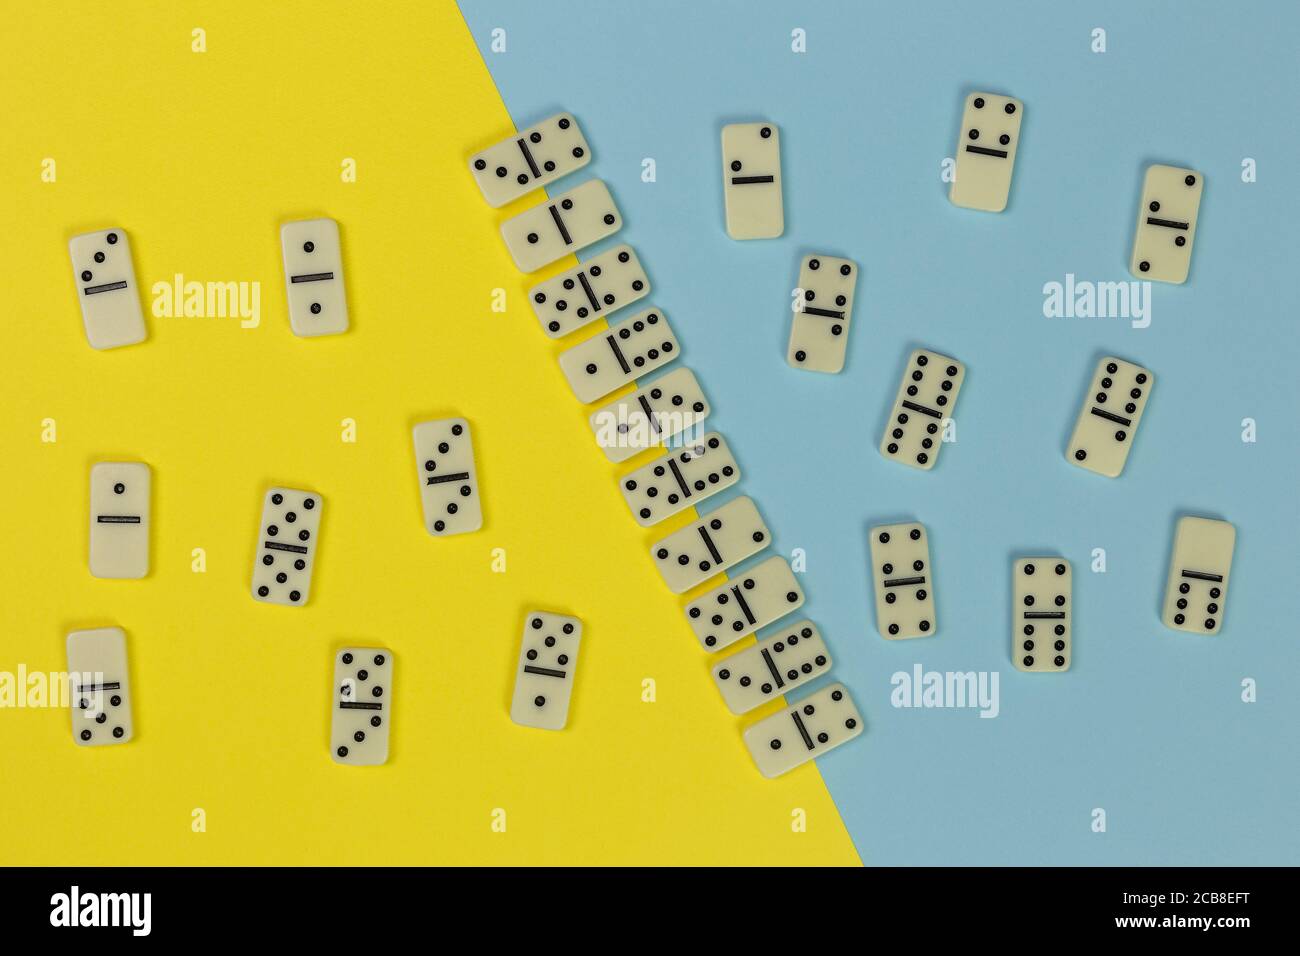 domino Spiel Konzept, Fliesen in gerade und ungerade auf der zweifarbigen gelben und blauen Oberfläche organisiert, Draufsicht Stockfoto